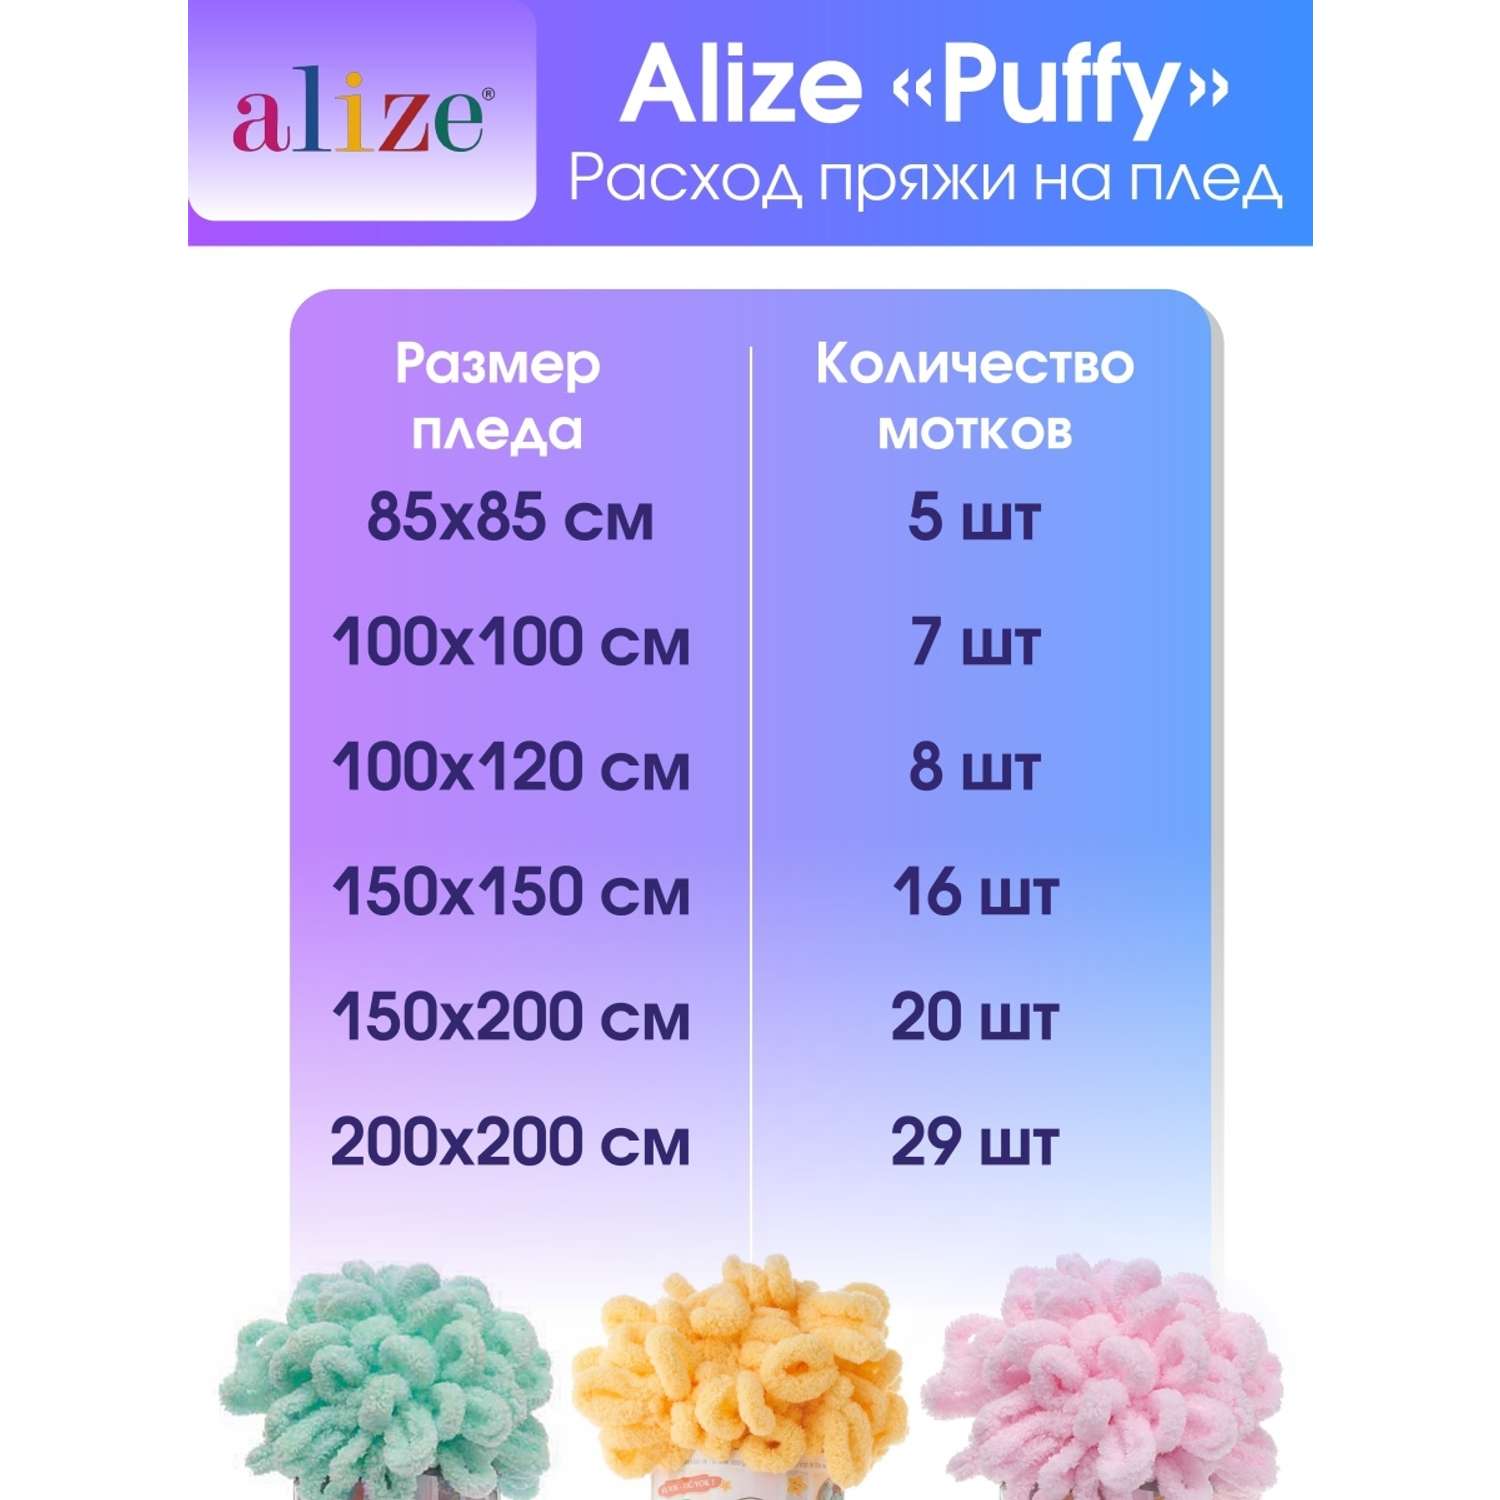 Пряжа для вязания Alize puffy 100 г 9 м микрополиэстер фантазийная плюшевая 639 кристально-розовый 5 мотков - фото 7